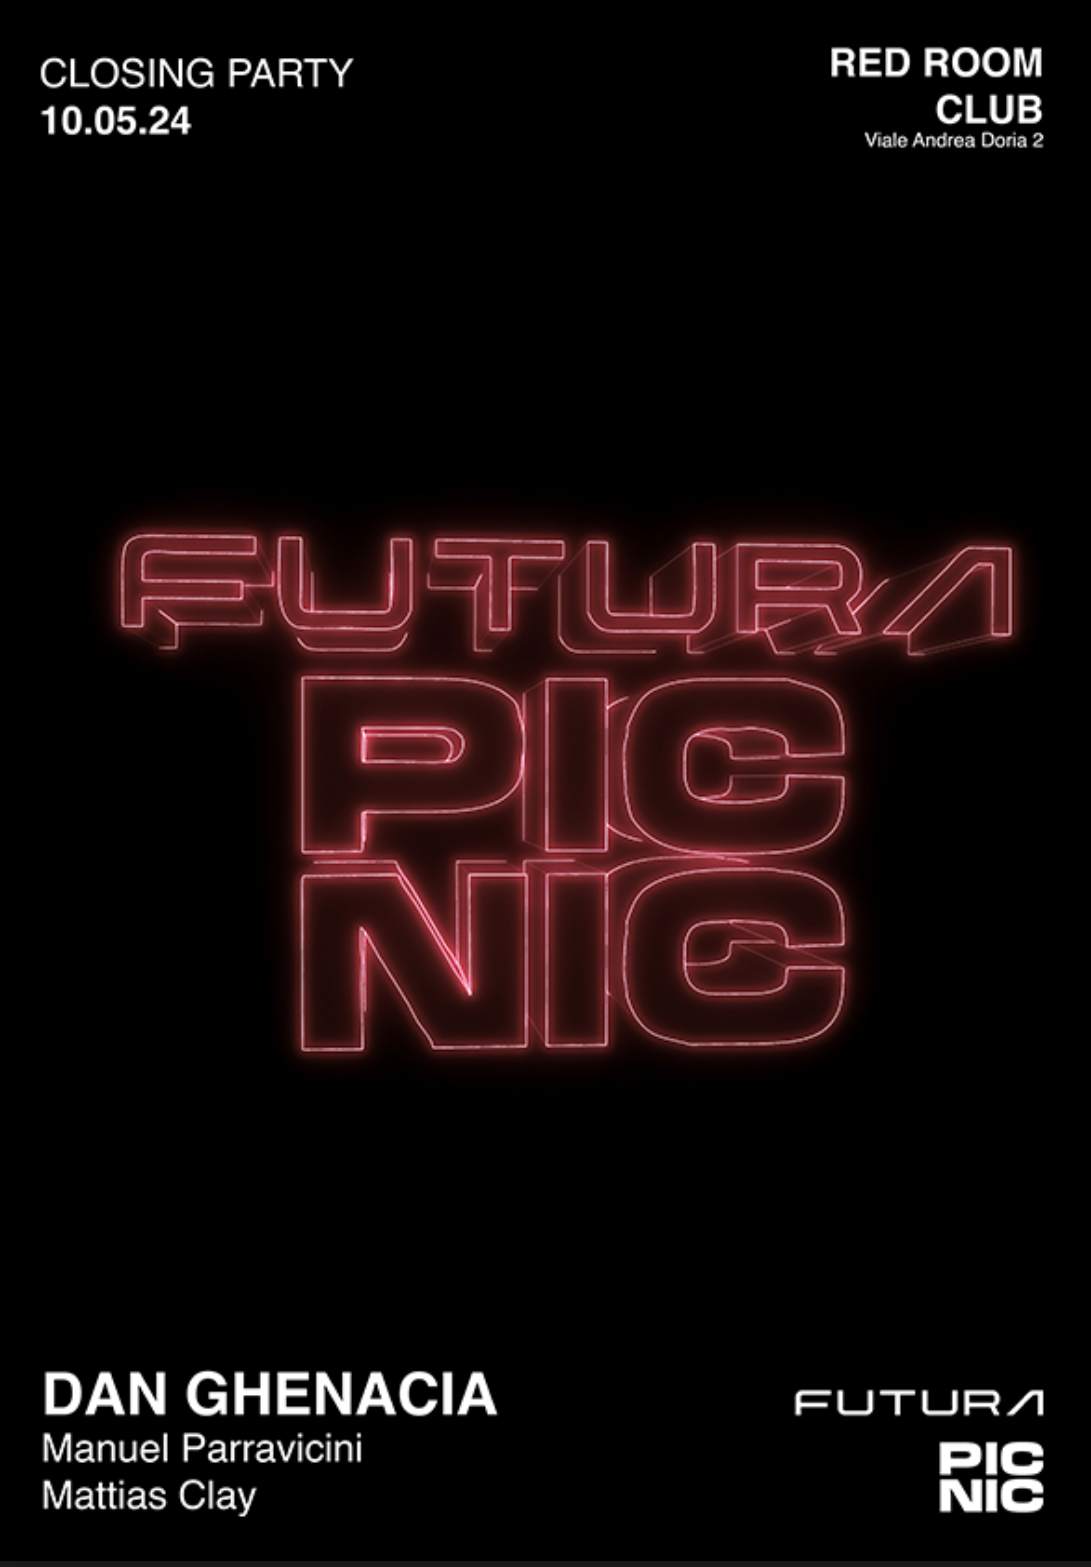 PICNIC X FUTURA W/ Dan Ghenacia - フライヤー表